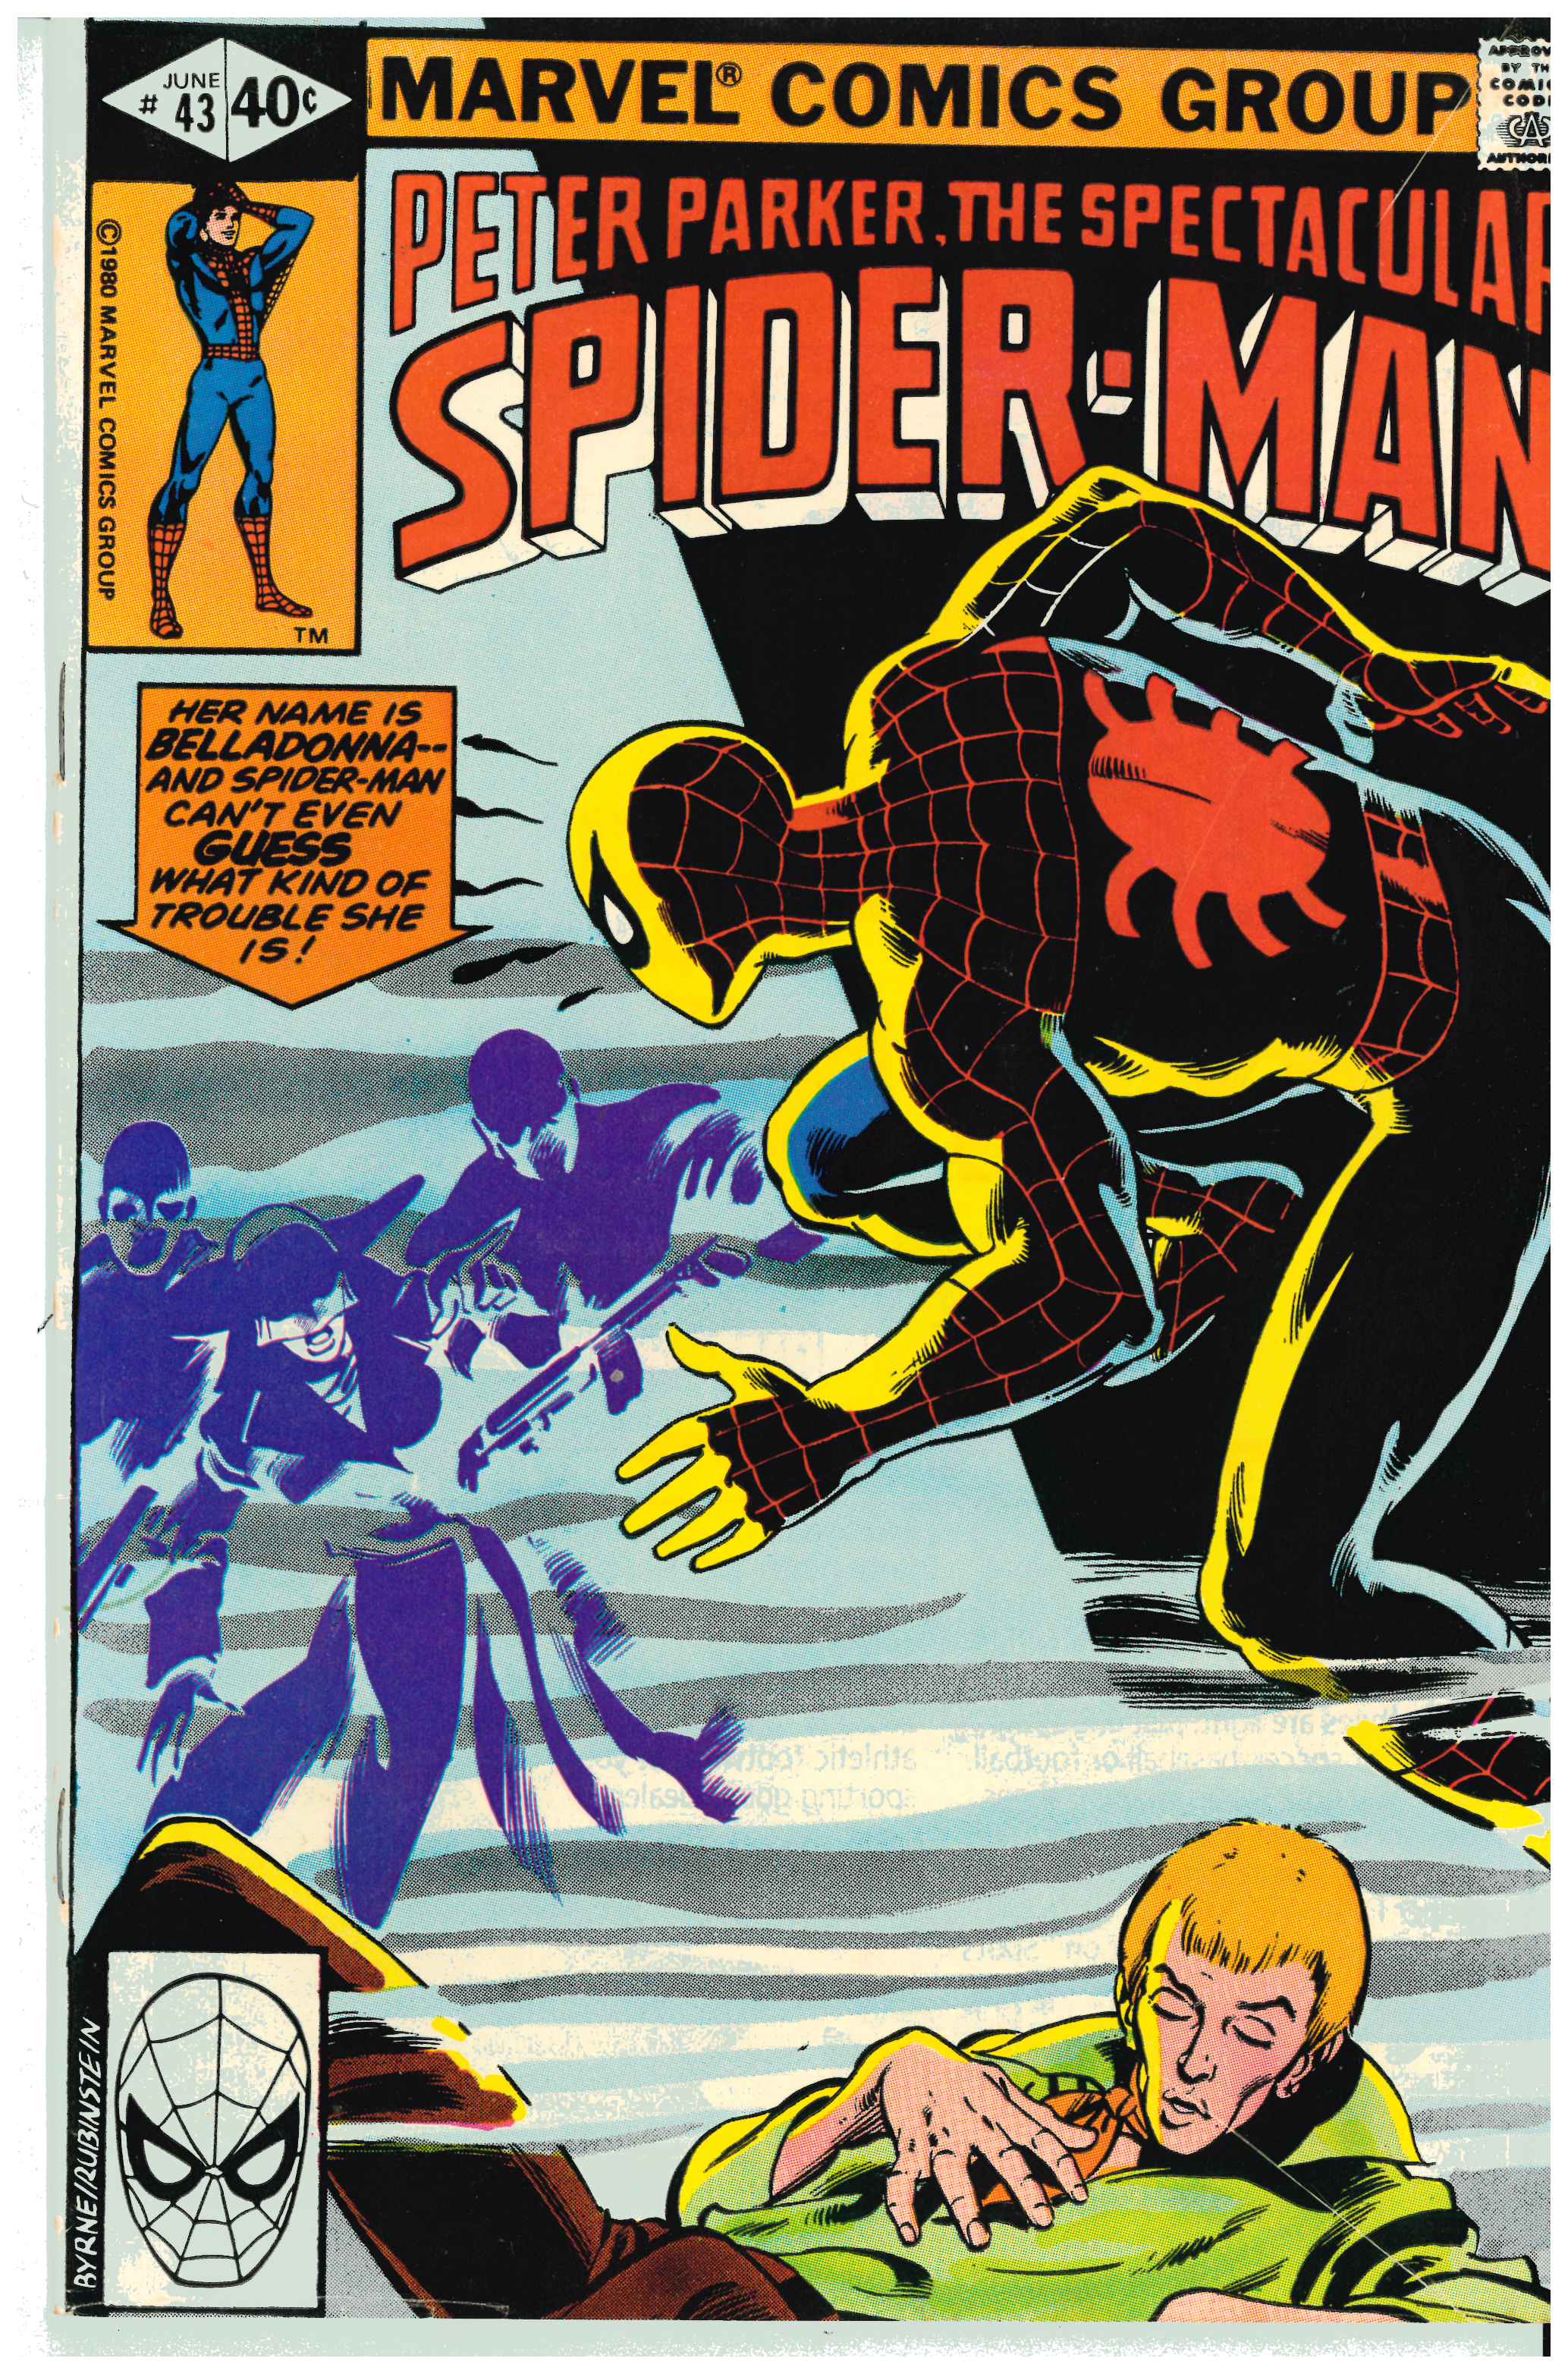 Spectacular Spider-Man #43